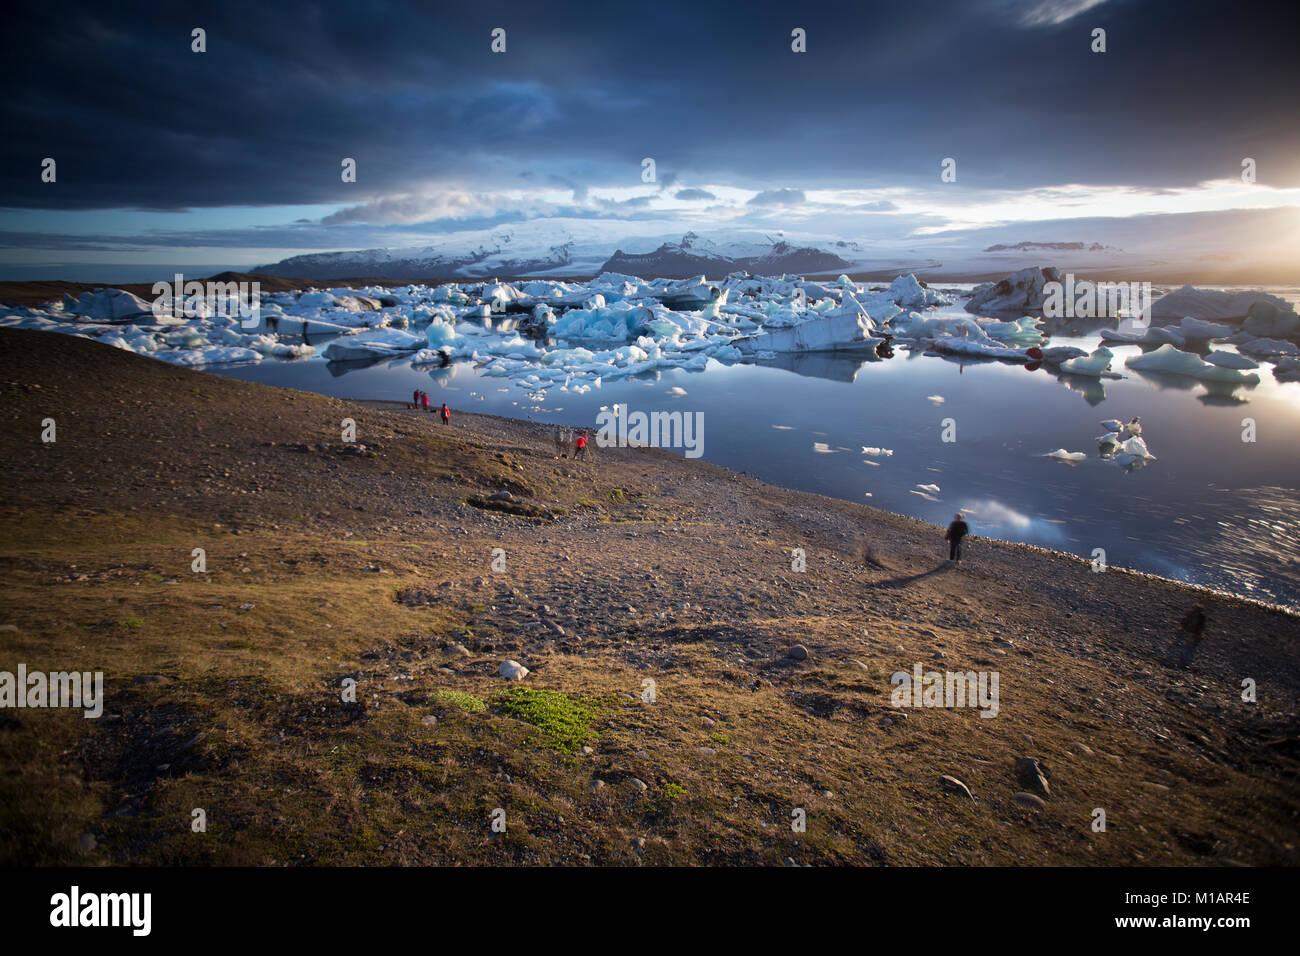 Laguna glaciale nel sud est dell'Islanda, una popolare destinazione turistica sulla ring road Foto Stock